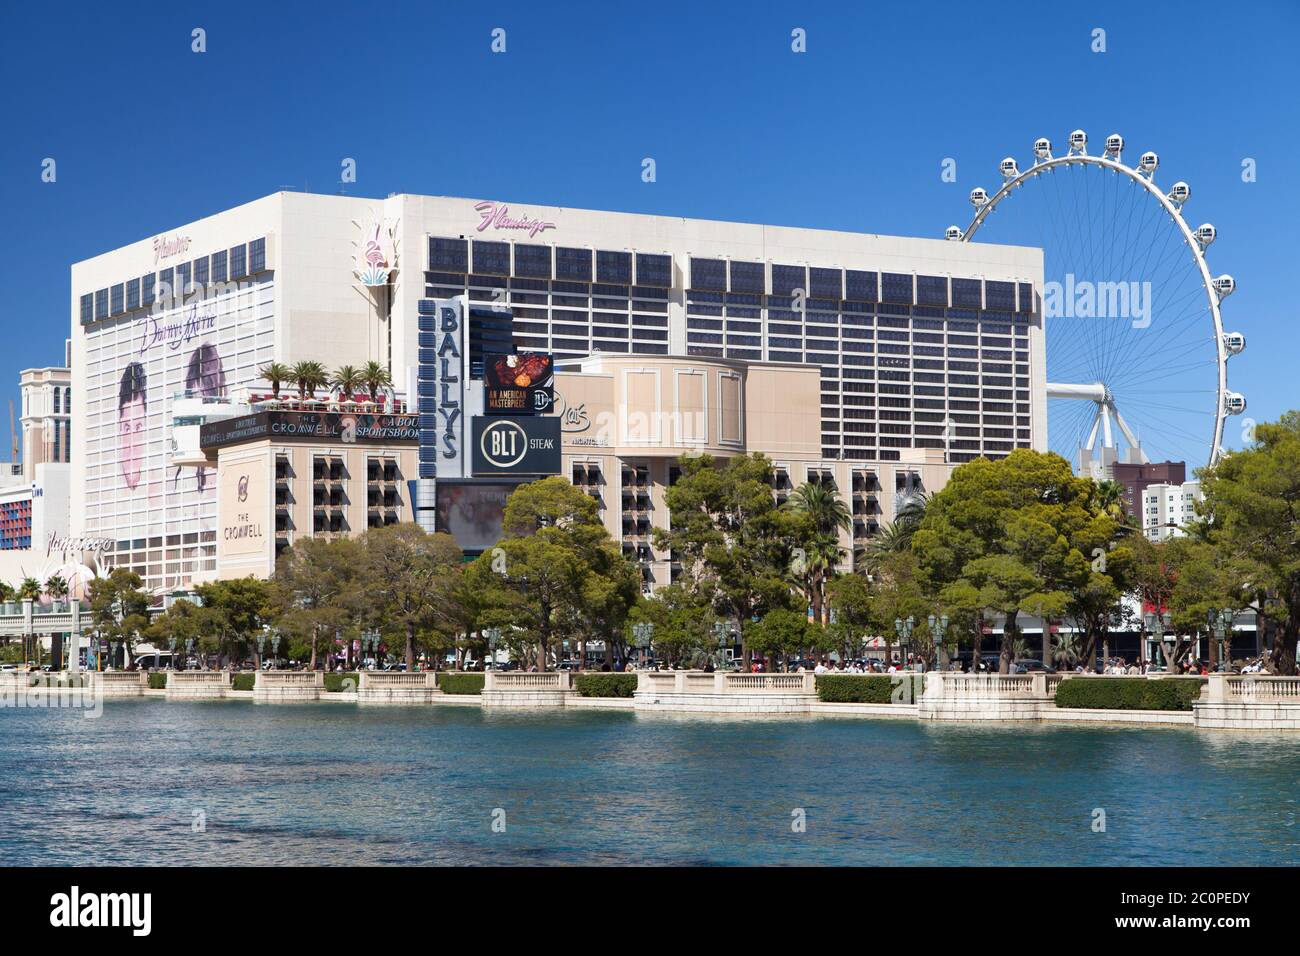 Las Vegas, Nevada - 30. August 2019: Flamingo Hotel und High Roller von den Springbrunnen des Bellagio in Las Vegas, Nevada, USA. Stockfoto